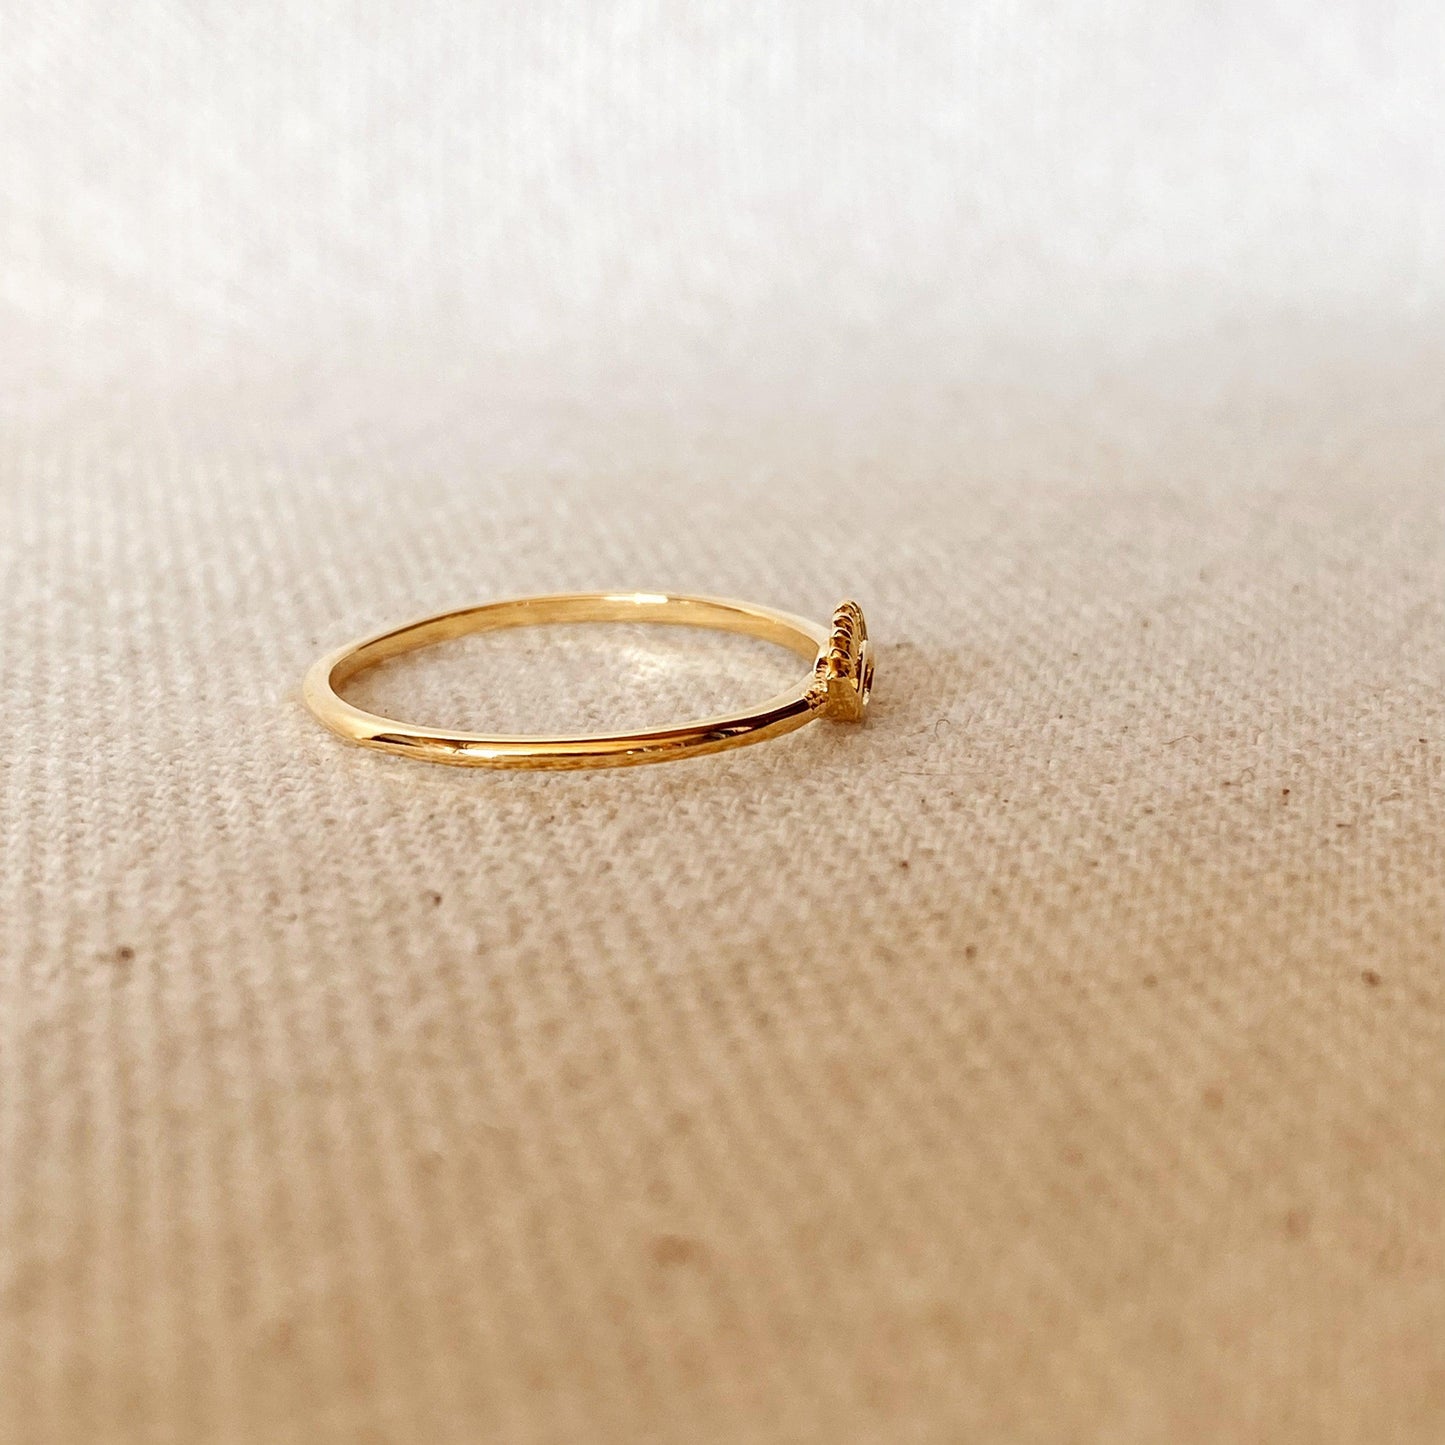 GoldFi 18k Gold Filled Evil Eye Ring